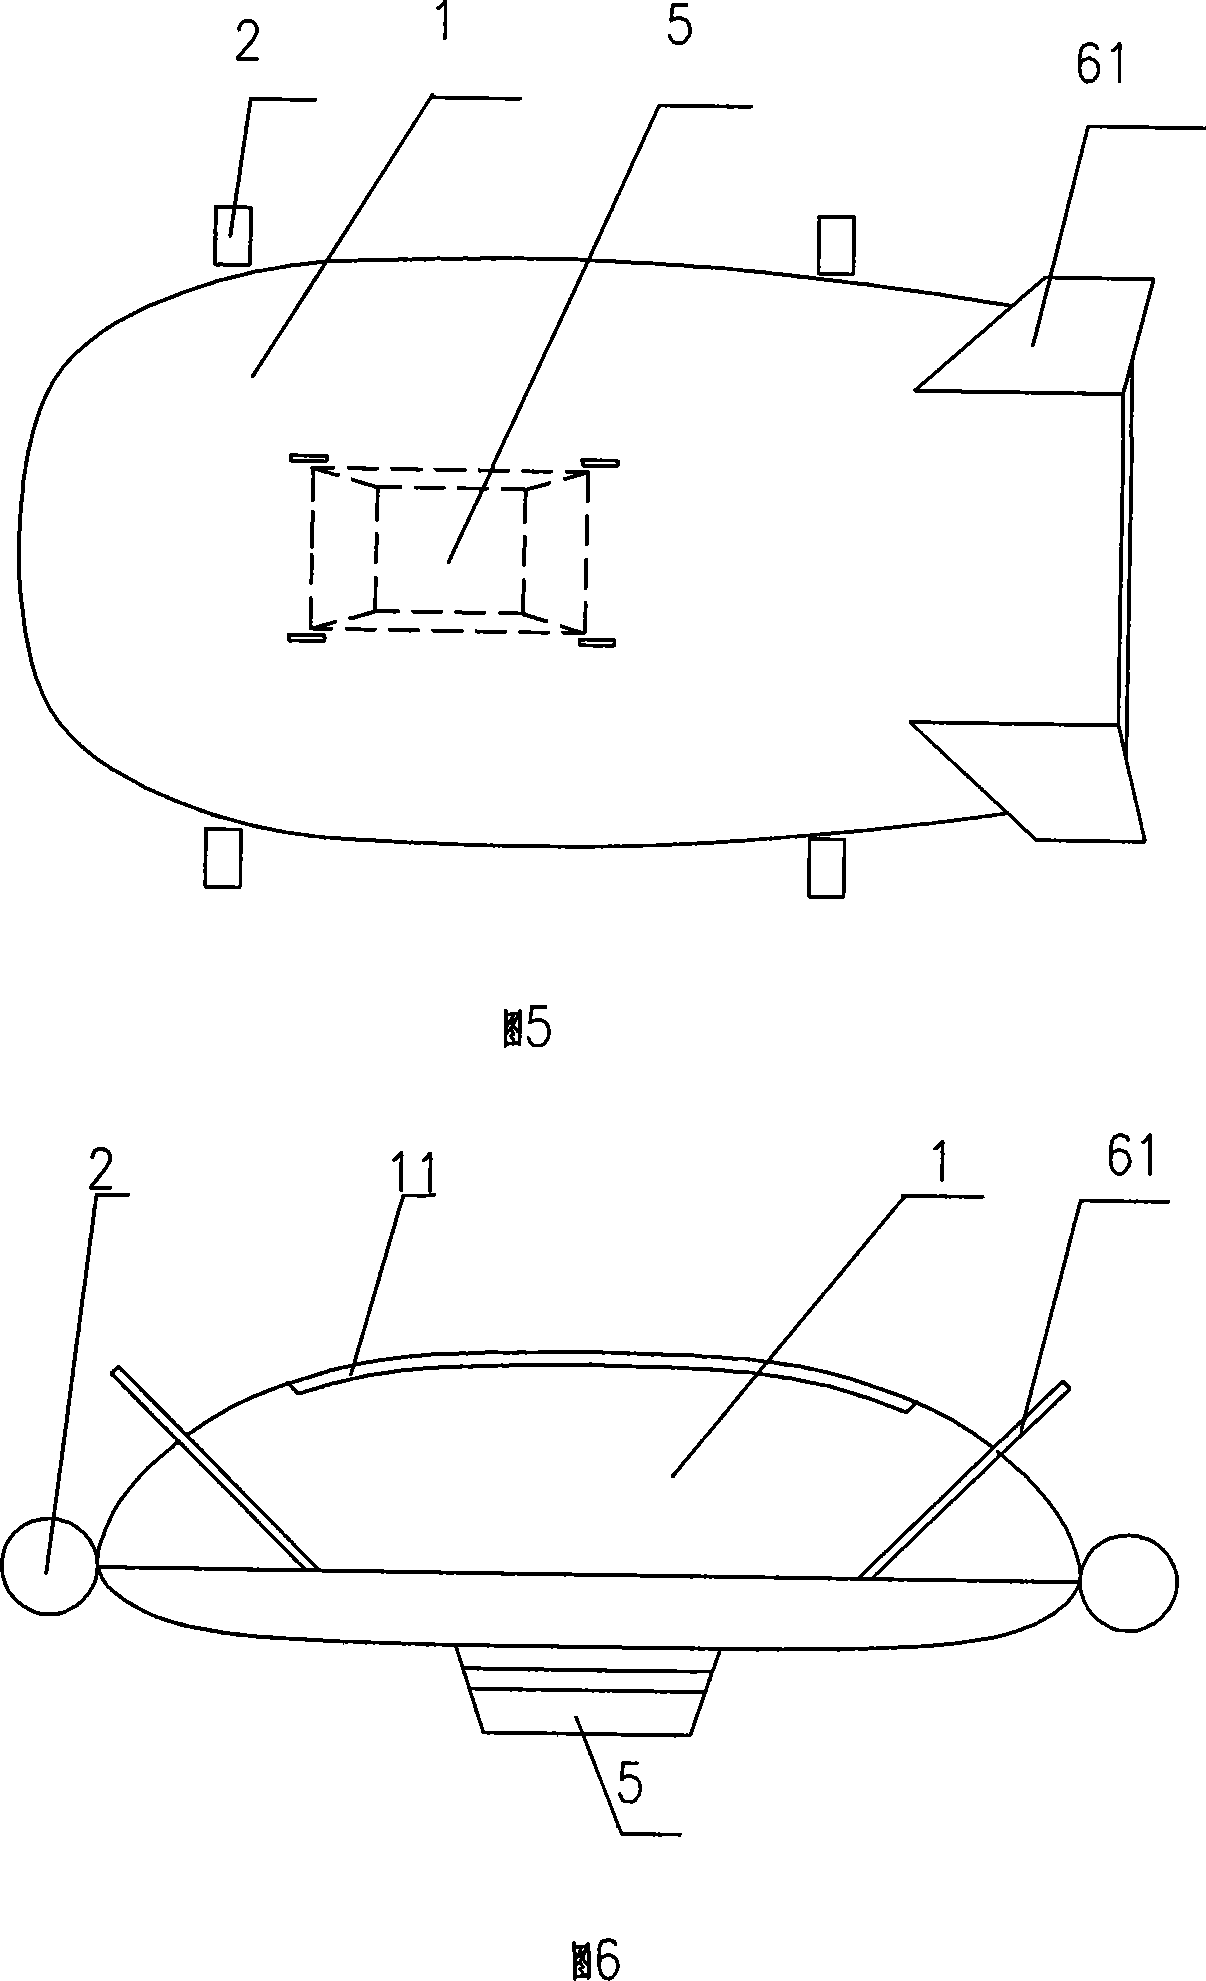 A novel V-shaped sopiler airship